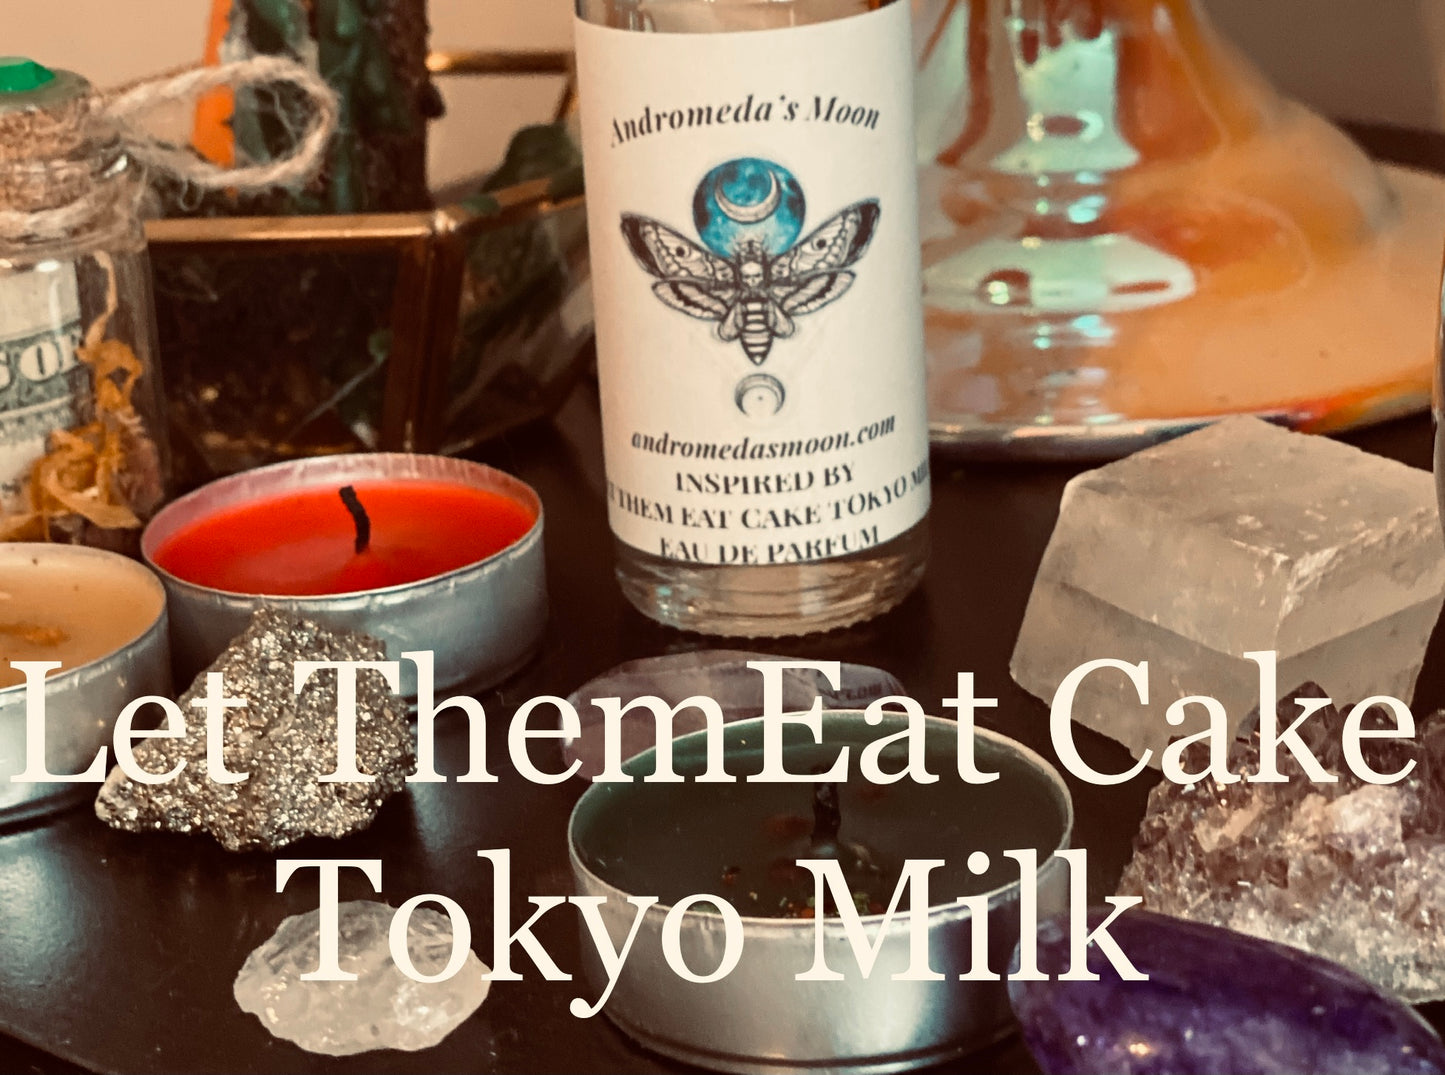 Inspired by Let Them Eat Cake Eau De Parfum Tokyo Milk